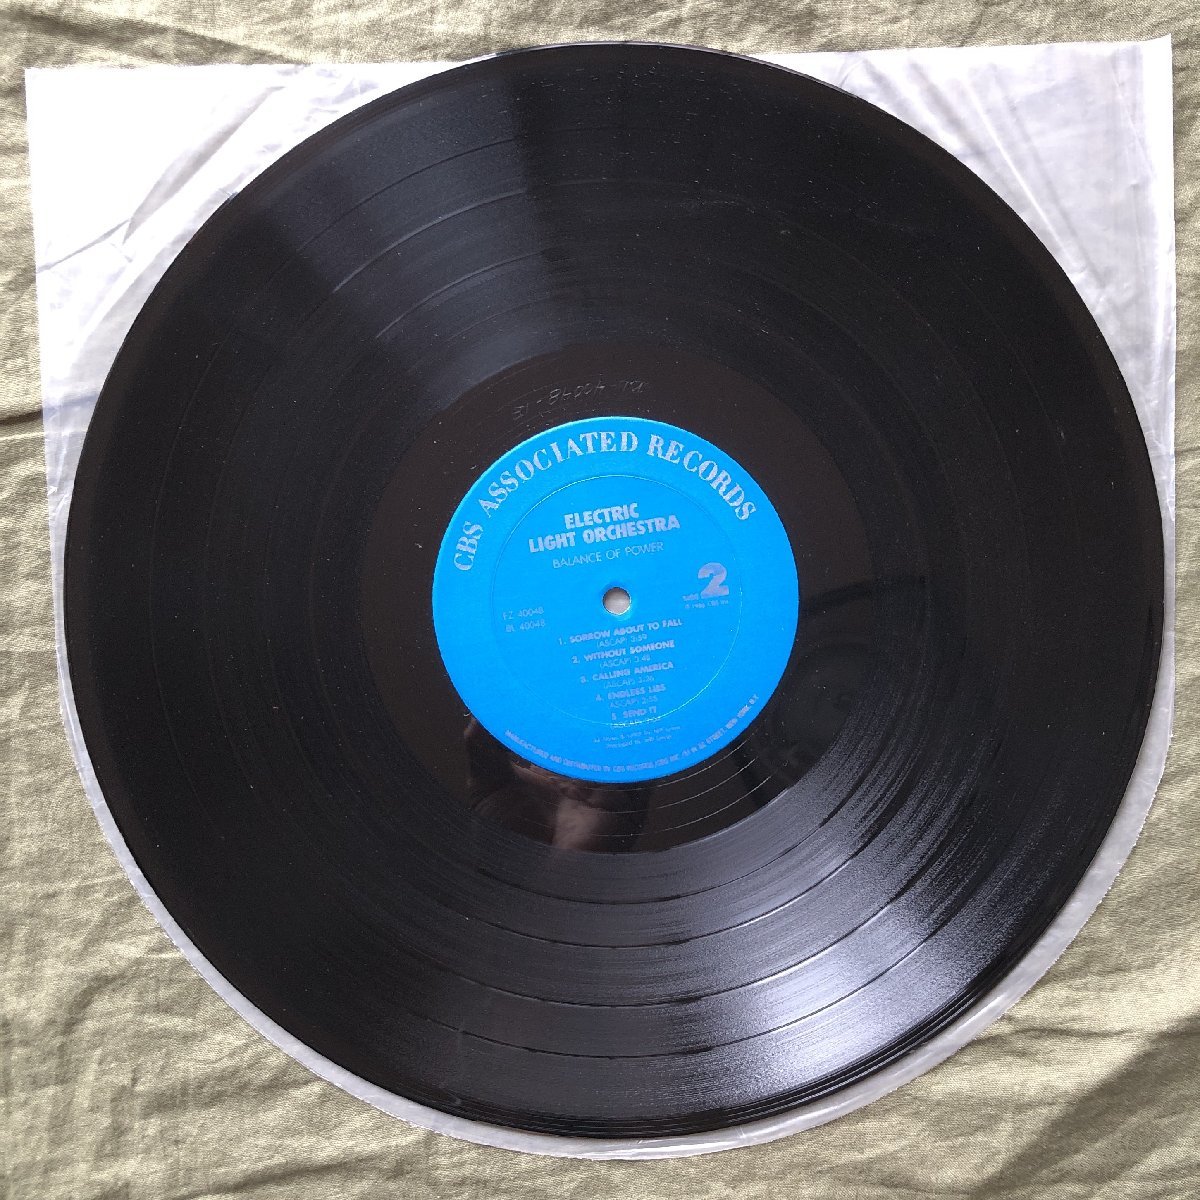 傷なし美盤 良ジャケ STERING刻印 1986年 米国初盤 Electric Light Orchestra (ELO) LPレコード バランス・オブ・パワー Balance Of Power_画像9